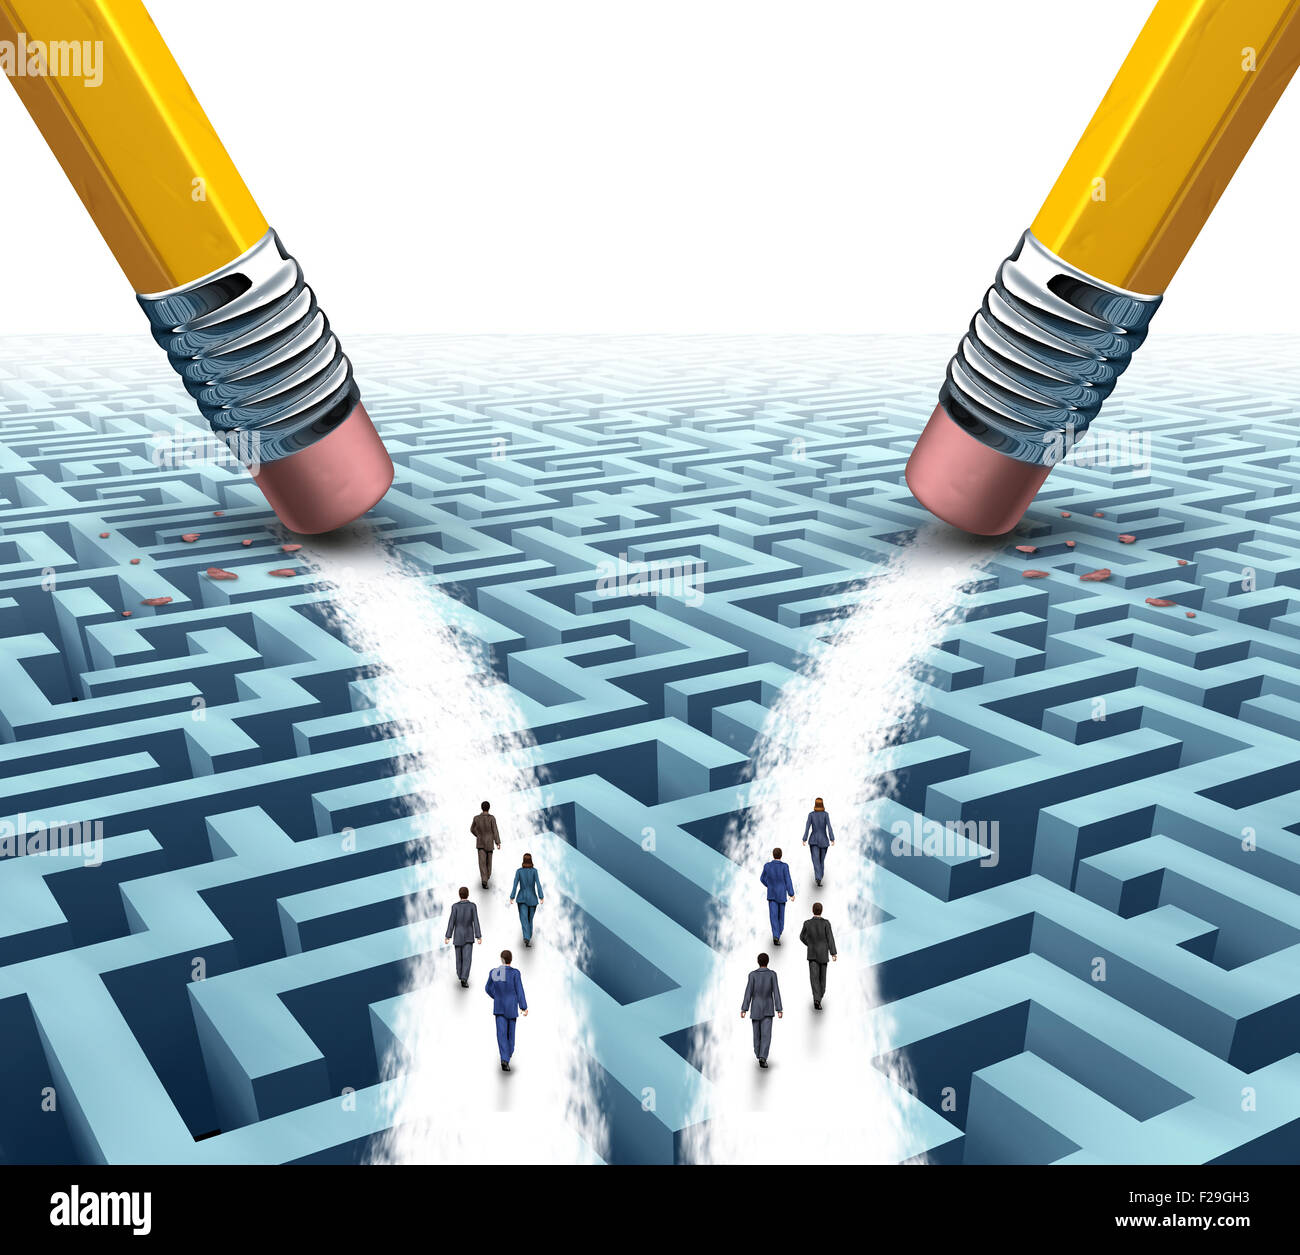 Business Team Lösung Wahl als zwei unterschiedliche Gruppen von Mitarbeitern auf einem Irrgarten oder Labyrinth auf offenen Pfaden von Bleistift Radiergummis als Metapher für die Beschäftigungsmöglichkeiten für die Rekrutierung von Unternehmen gemacht. Stockfoto